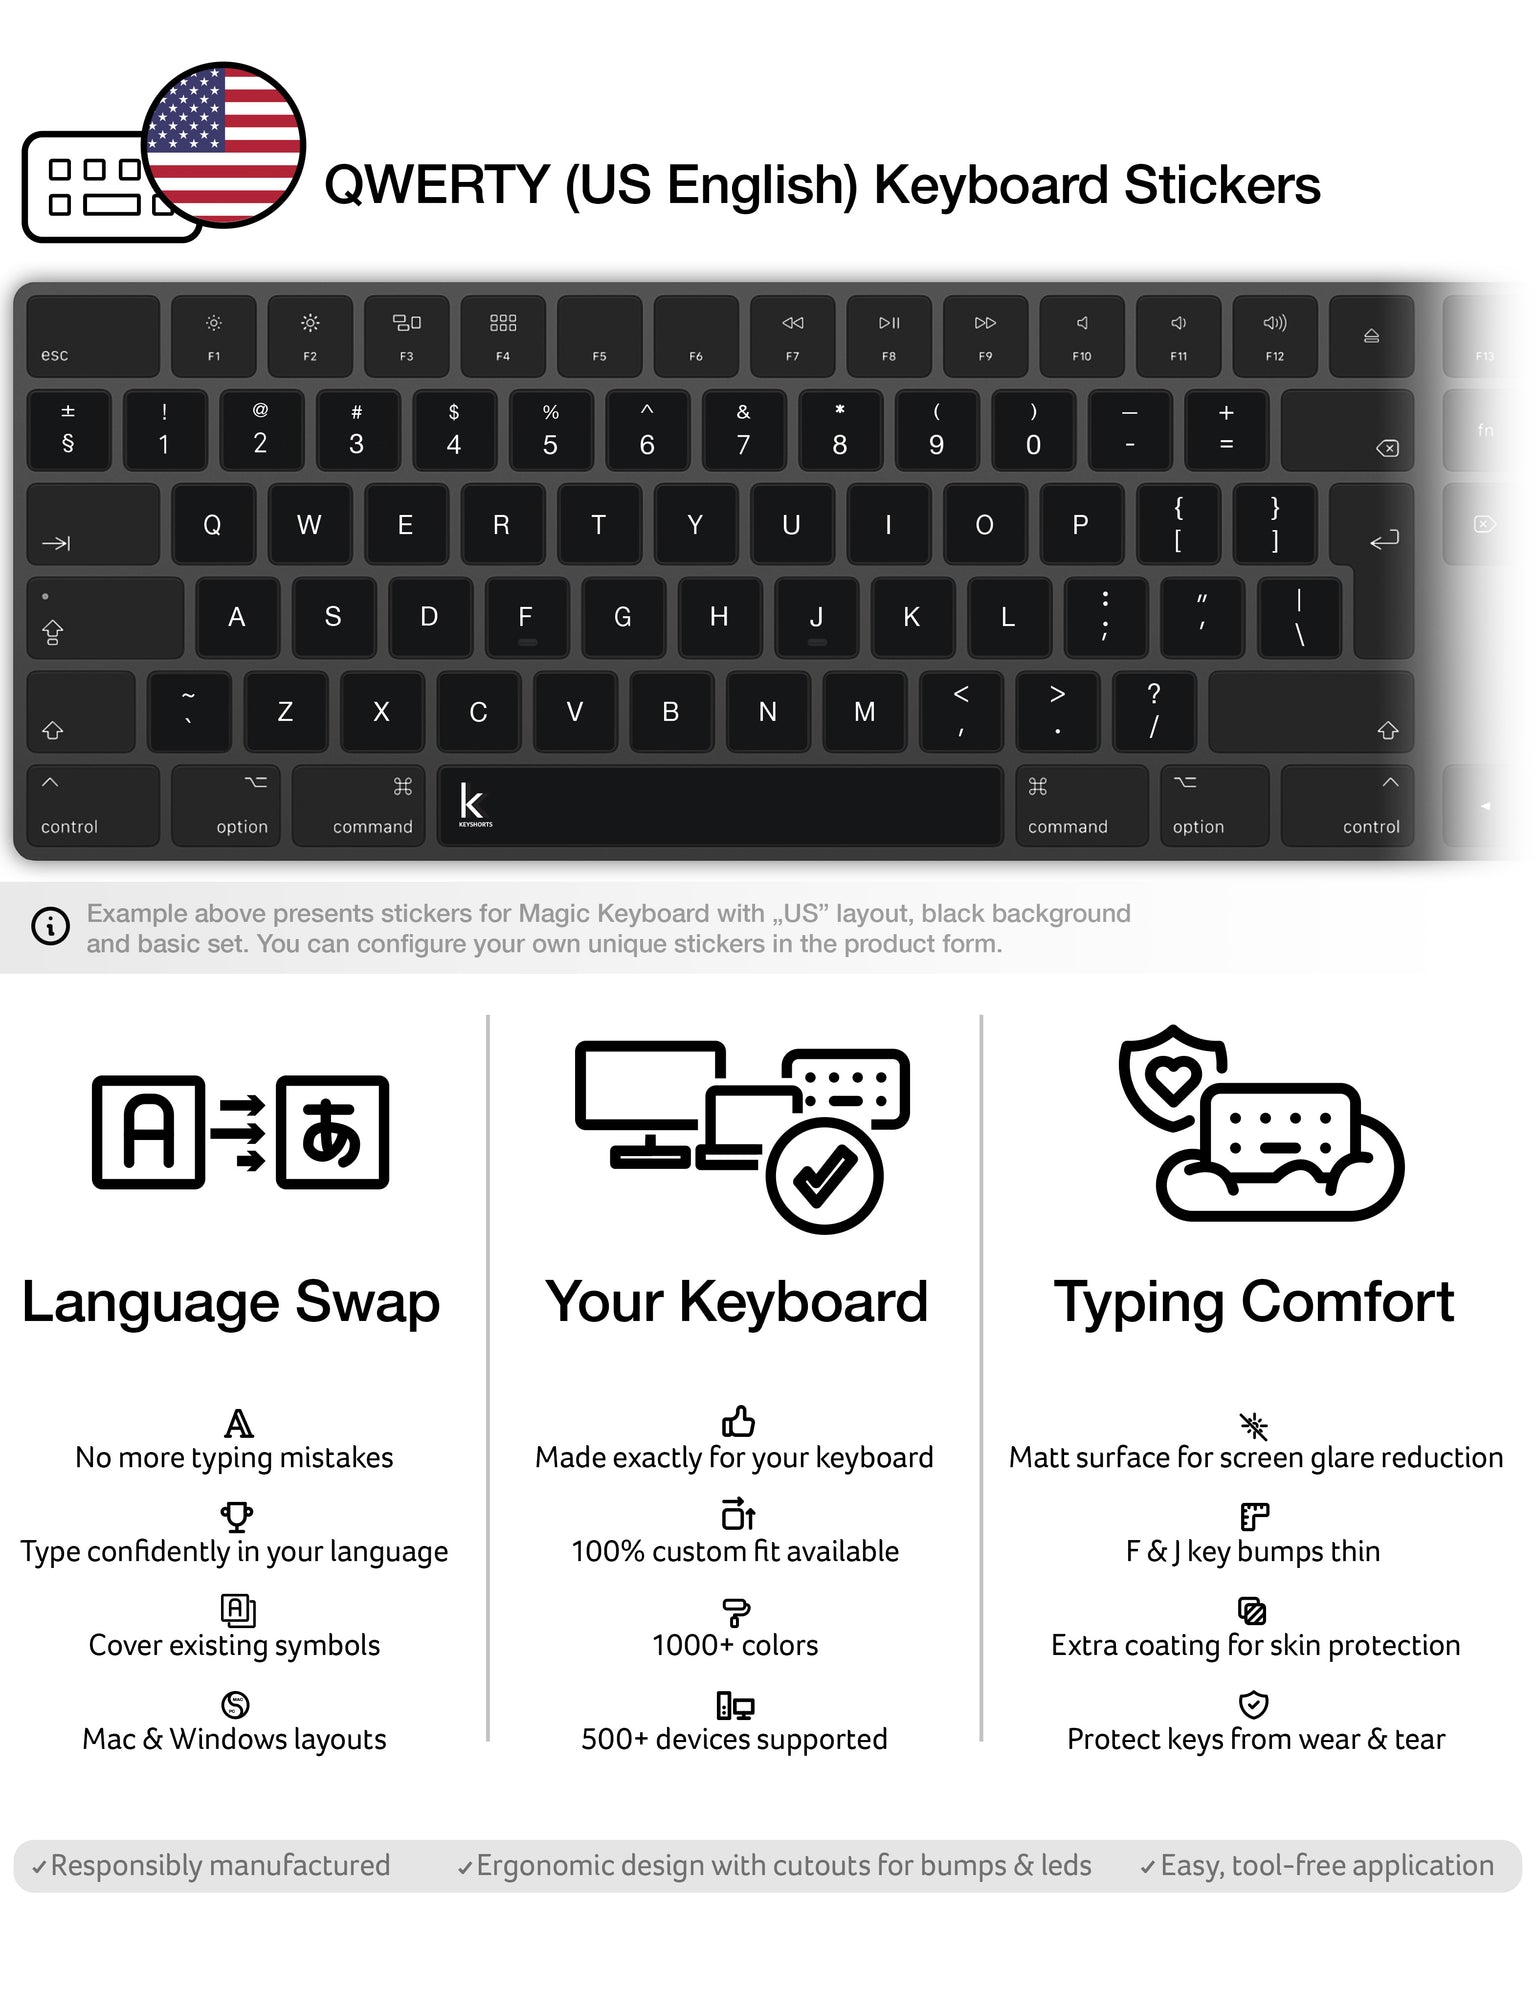 QWERTY (US English) Keyboard Stickers